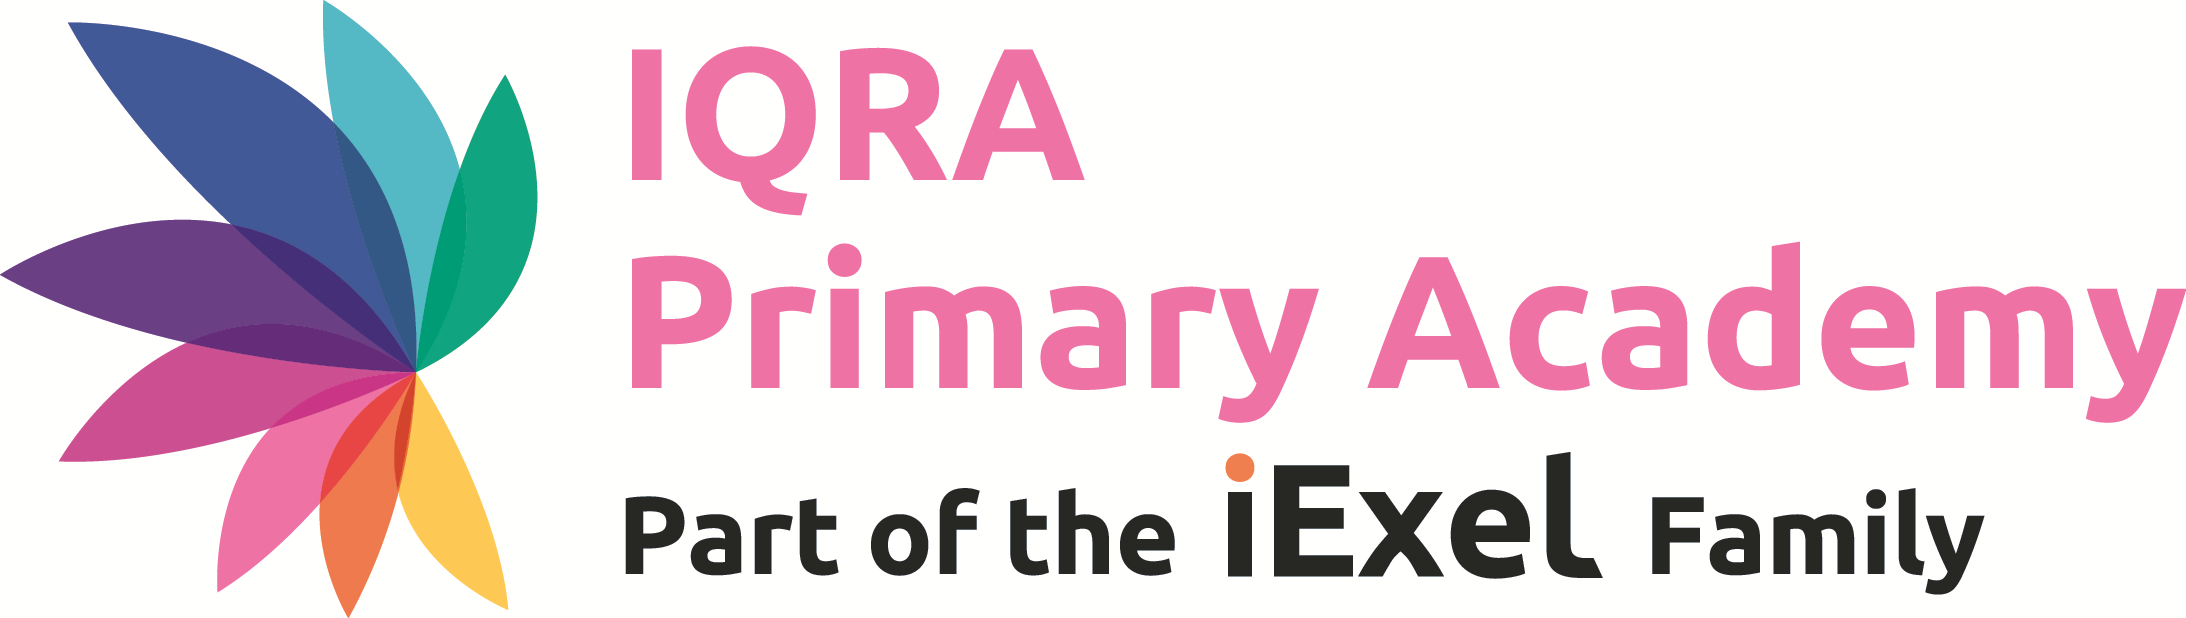 Iqra Primary Academy logo